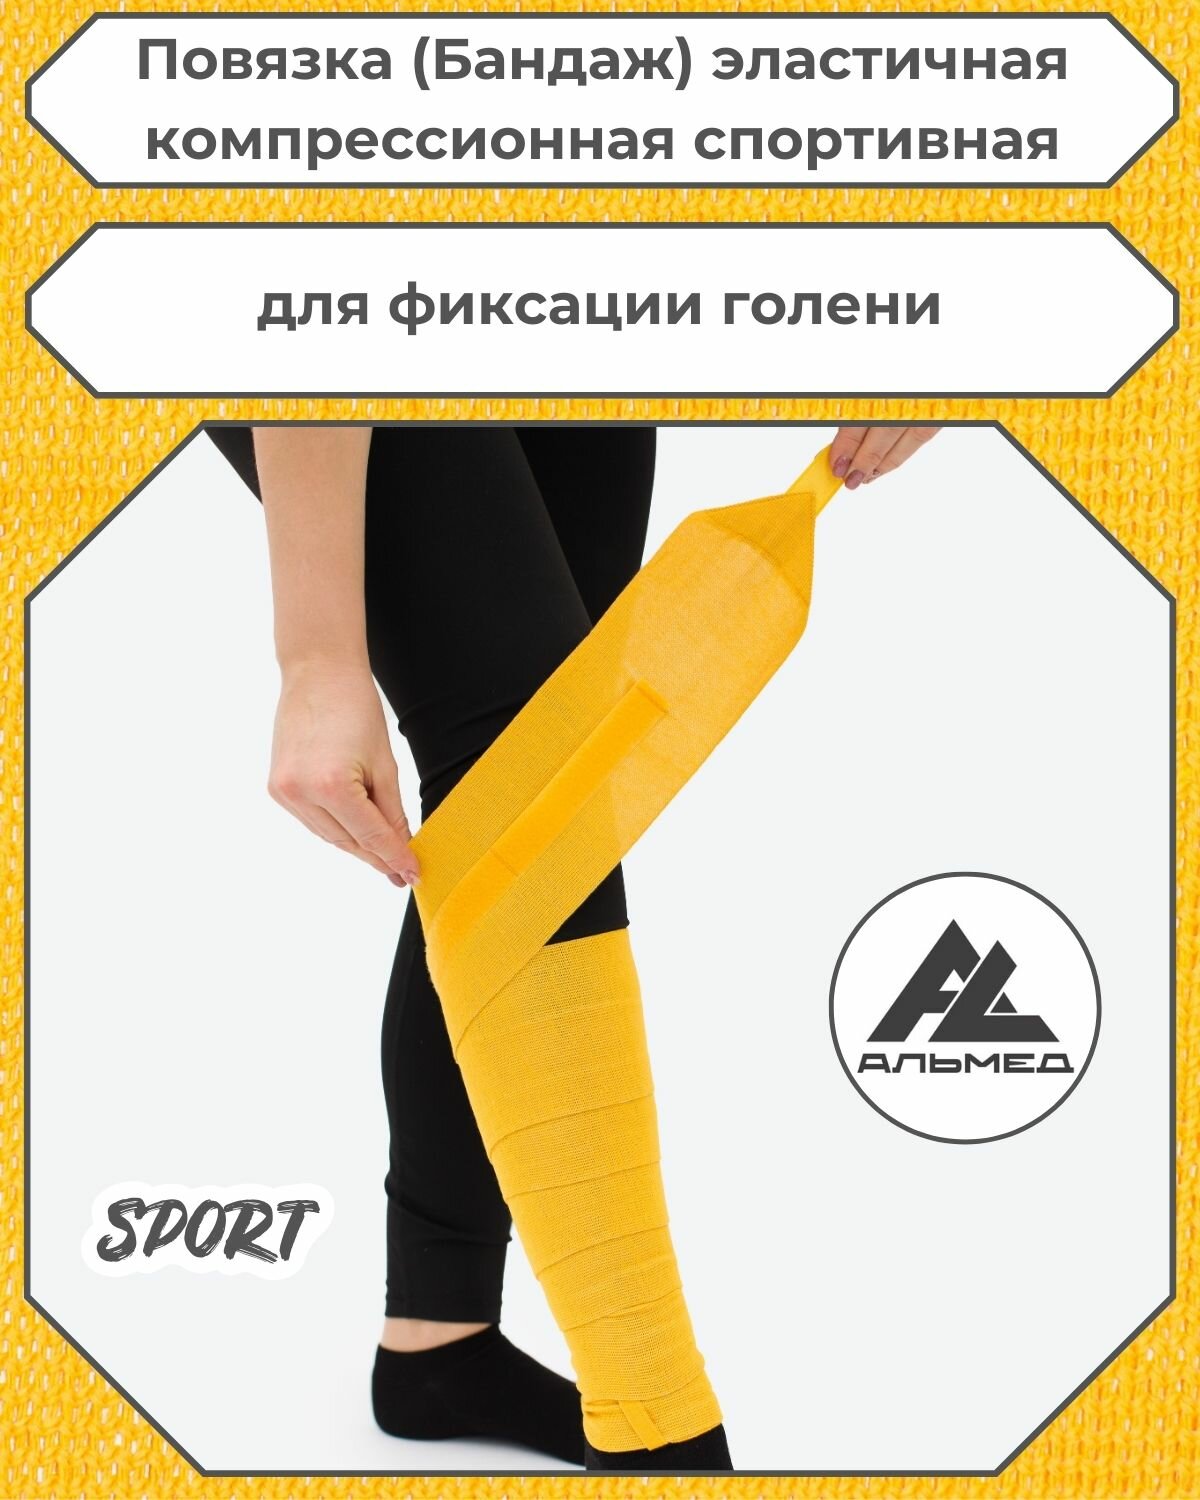 Повязка(бандаж, фиксатор)спортивная эластичная компрессионная на голень, универсальная, застёжка «Velcro» 2,5 м *100мм, жёлтый, с липучкой, Альмед